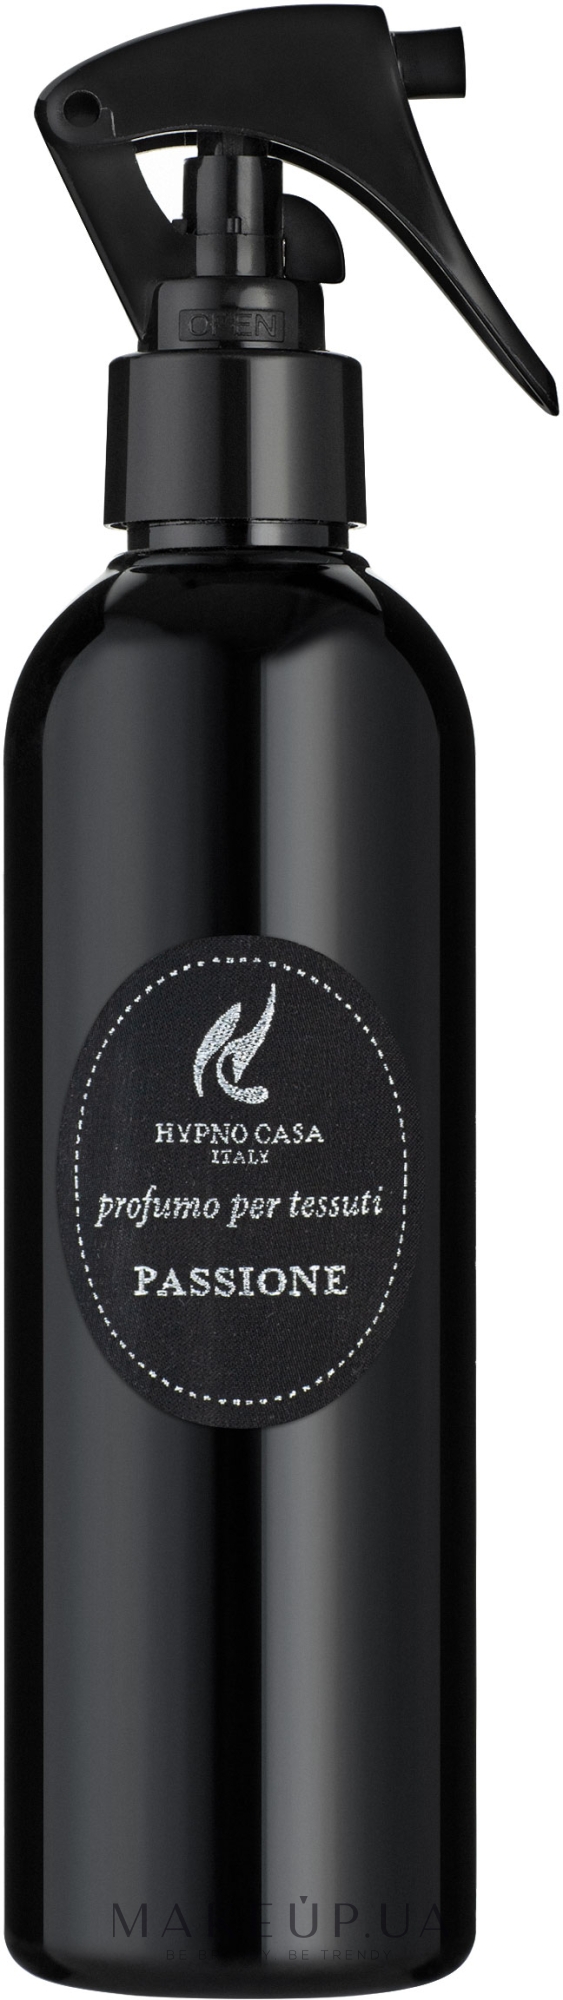 Hypno Casa Luxury Line Passione - Парфюм для текстиля — фото 250ml